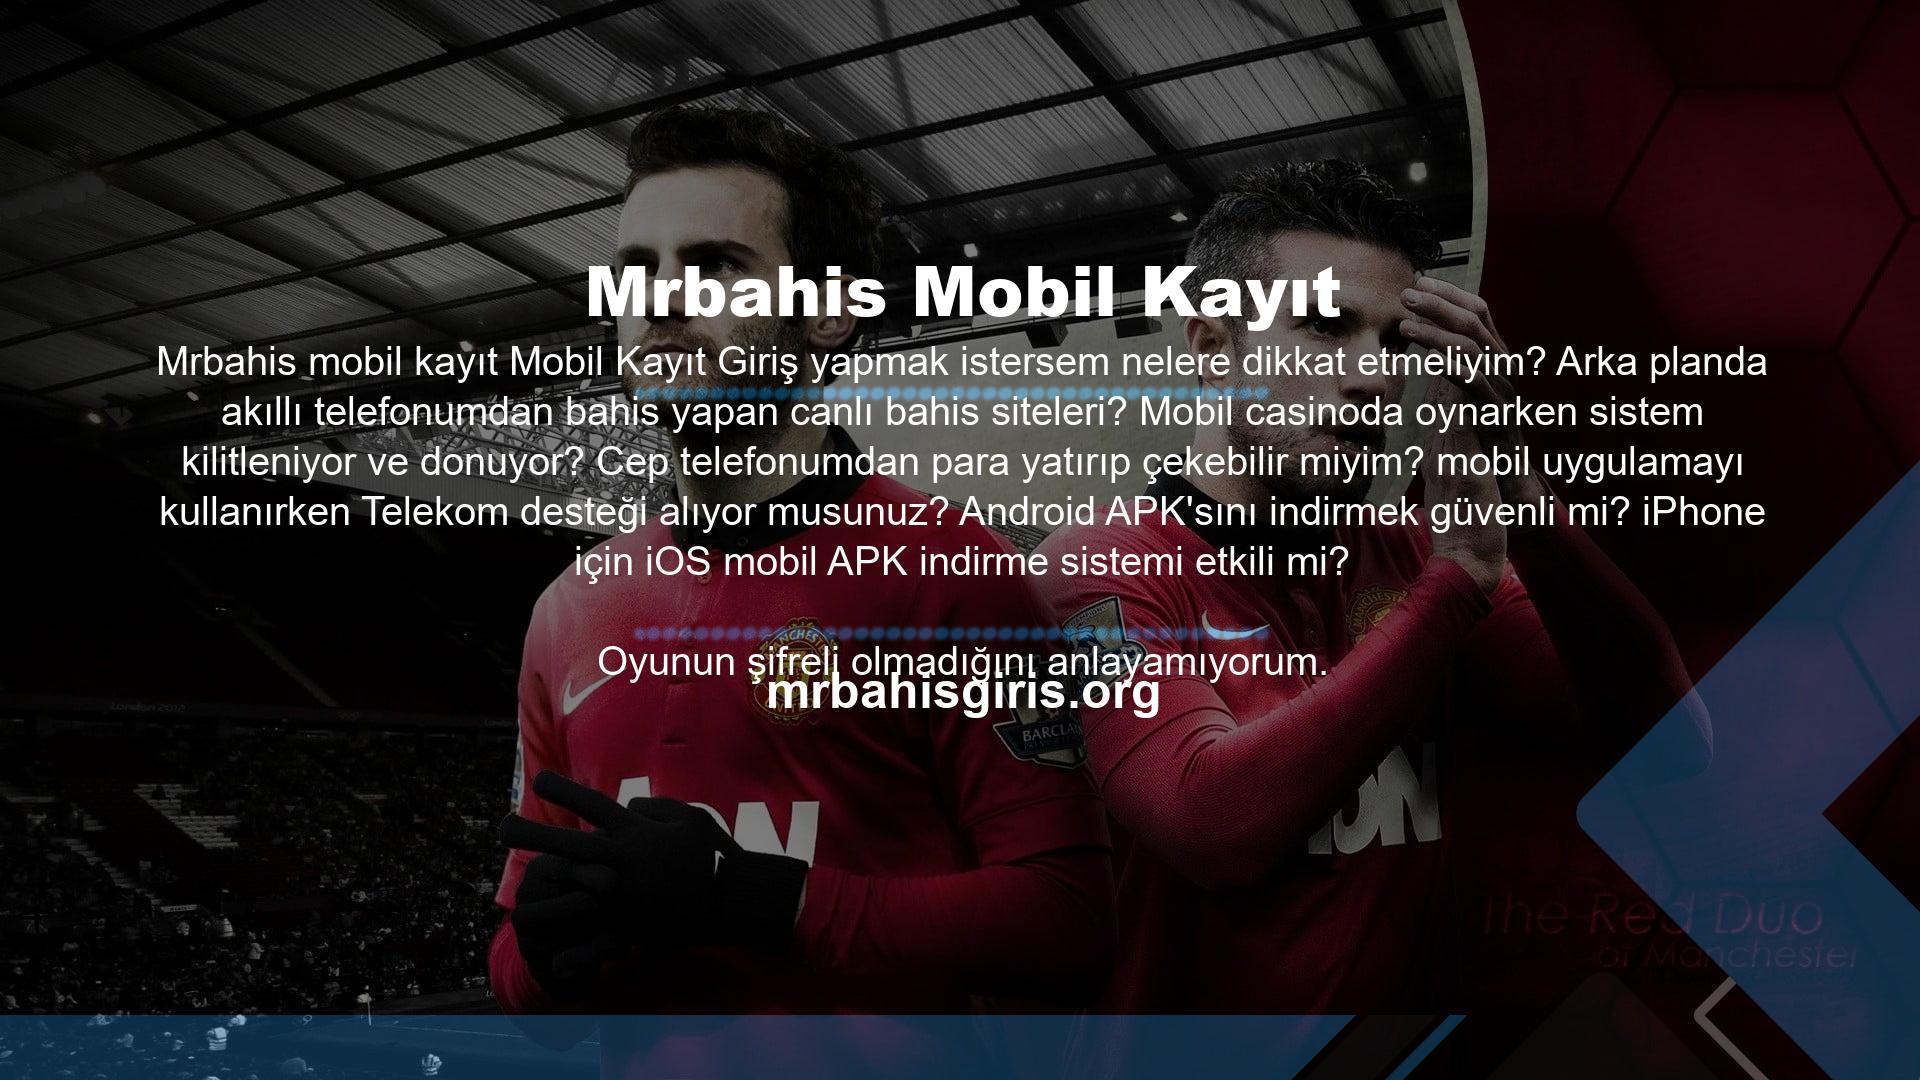 Tüm oyunlar Türkçe şifreli kanallarda yayınlanmaktadır